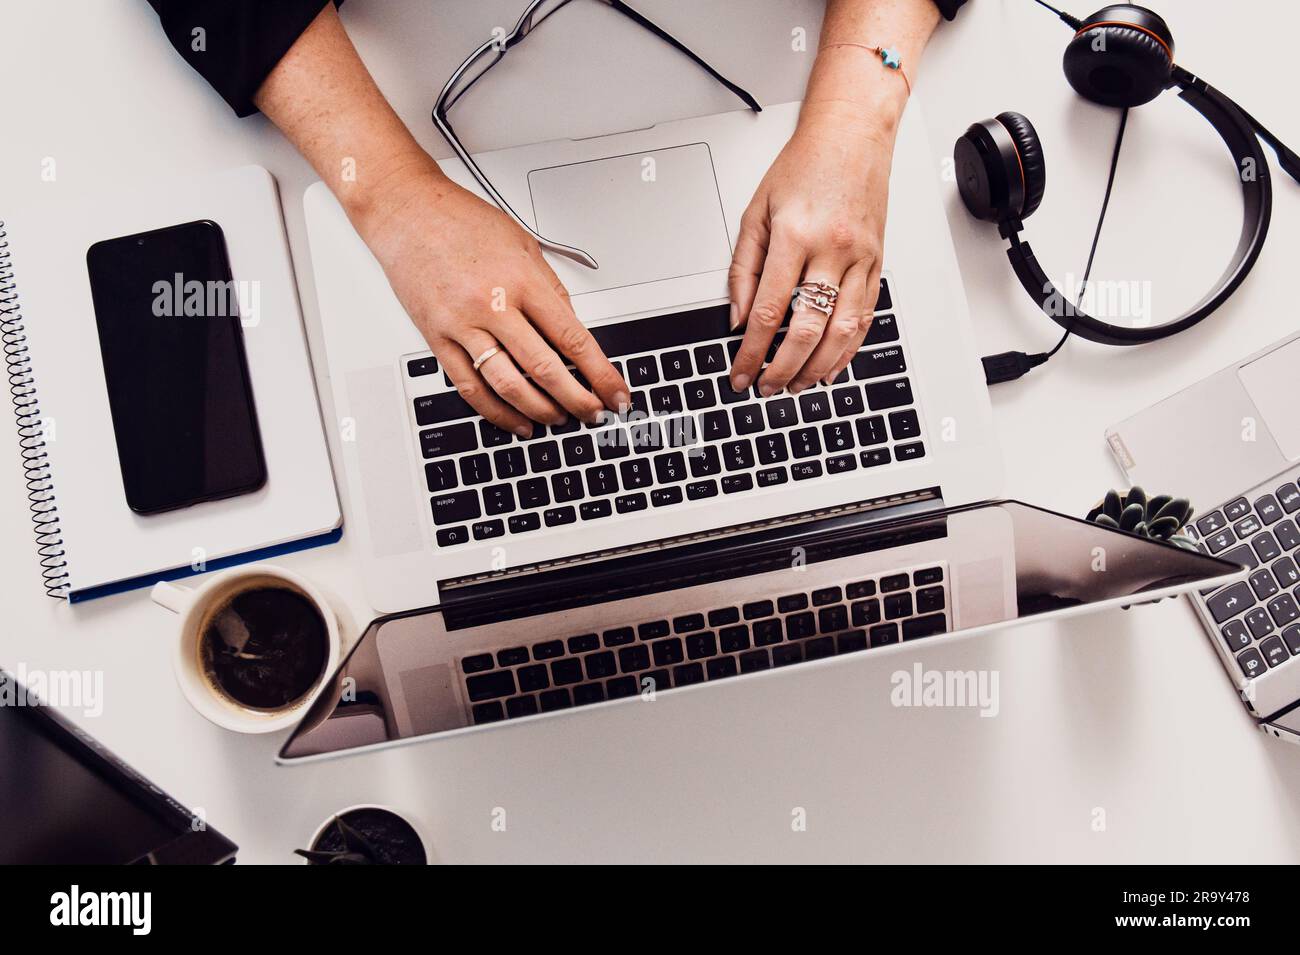 Une personne assise à un bureau avec son ordinateur portable et d'autres fournitures Banque D'Images